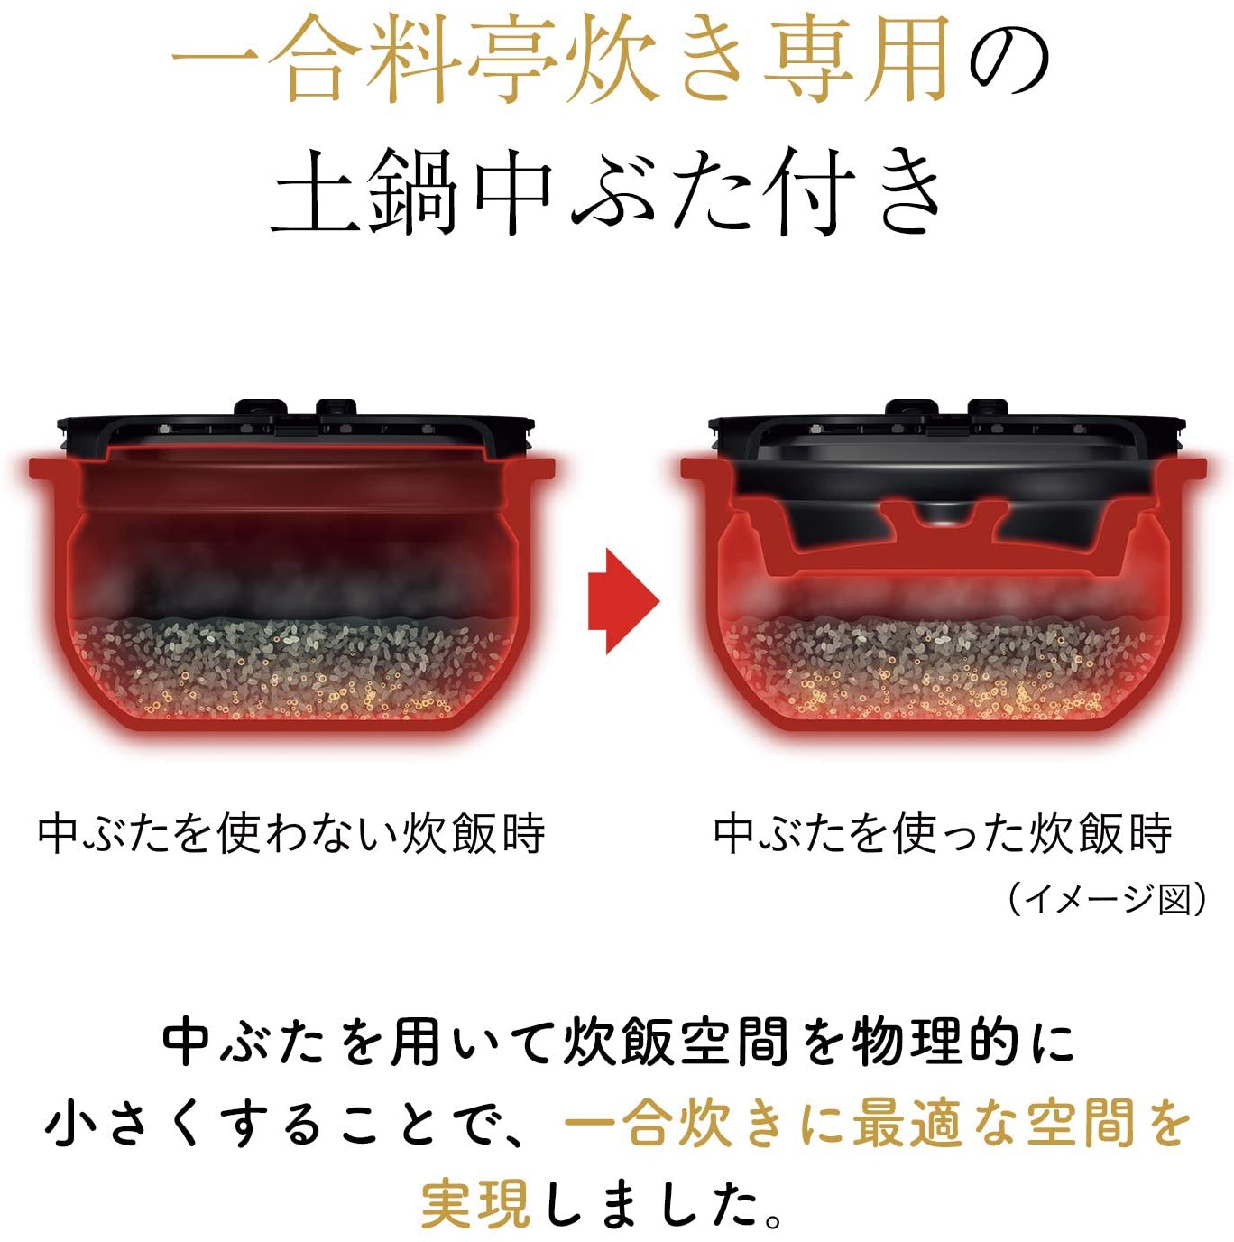 タイガー魔法瓶(TIGER) 土鍋圧力IHジャー炊飯器 JPG-S100の商品画像サムネ6 